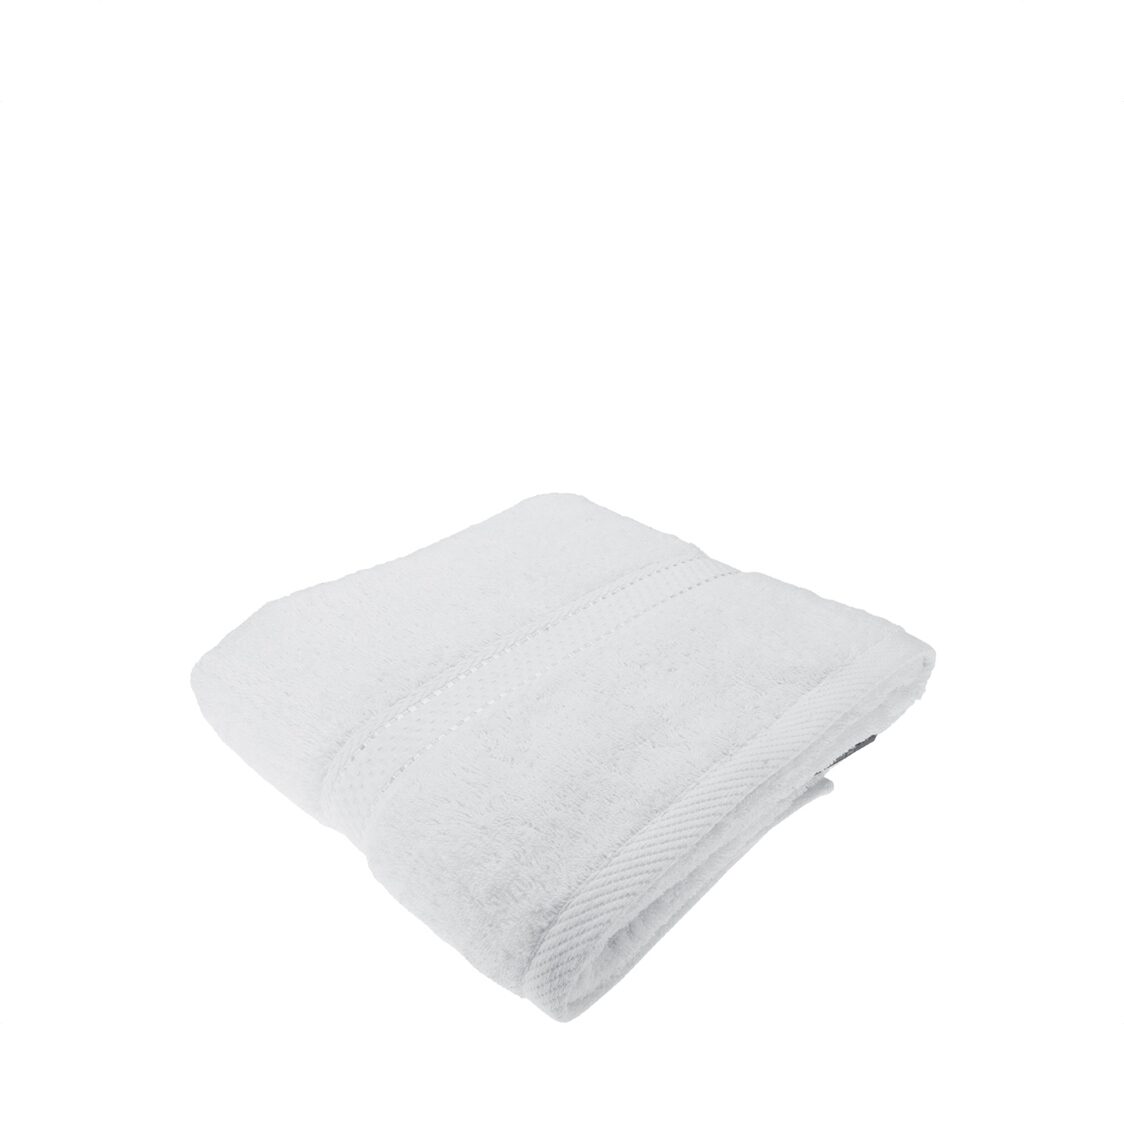 Charles Millen Suite Collection CT108 Classique Bath Towel White